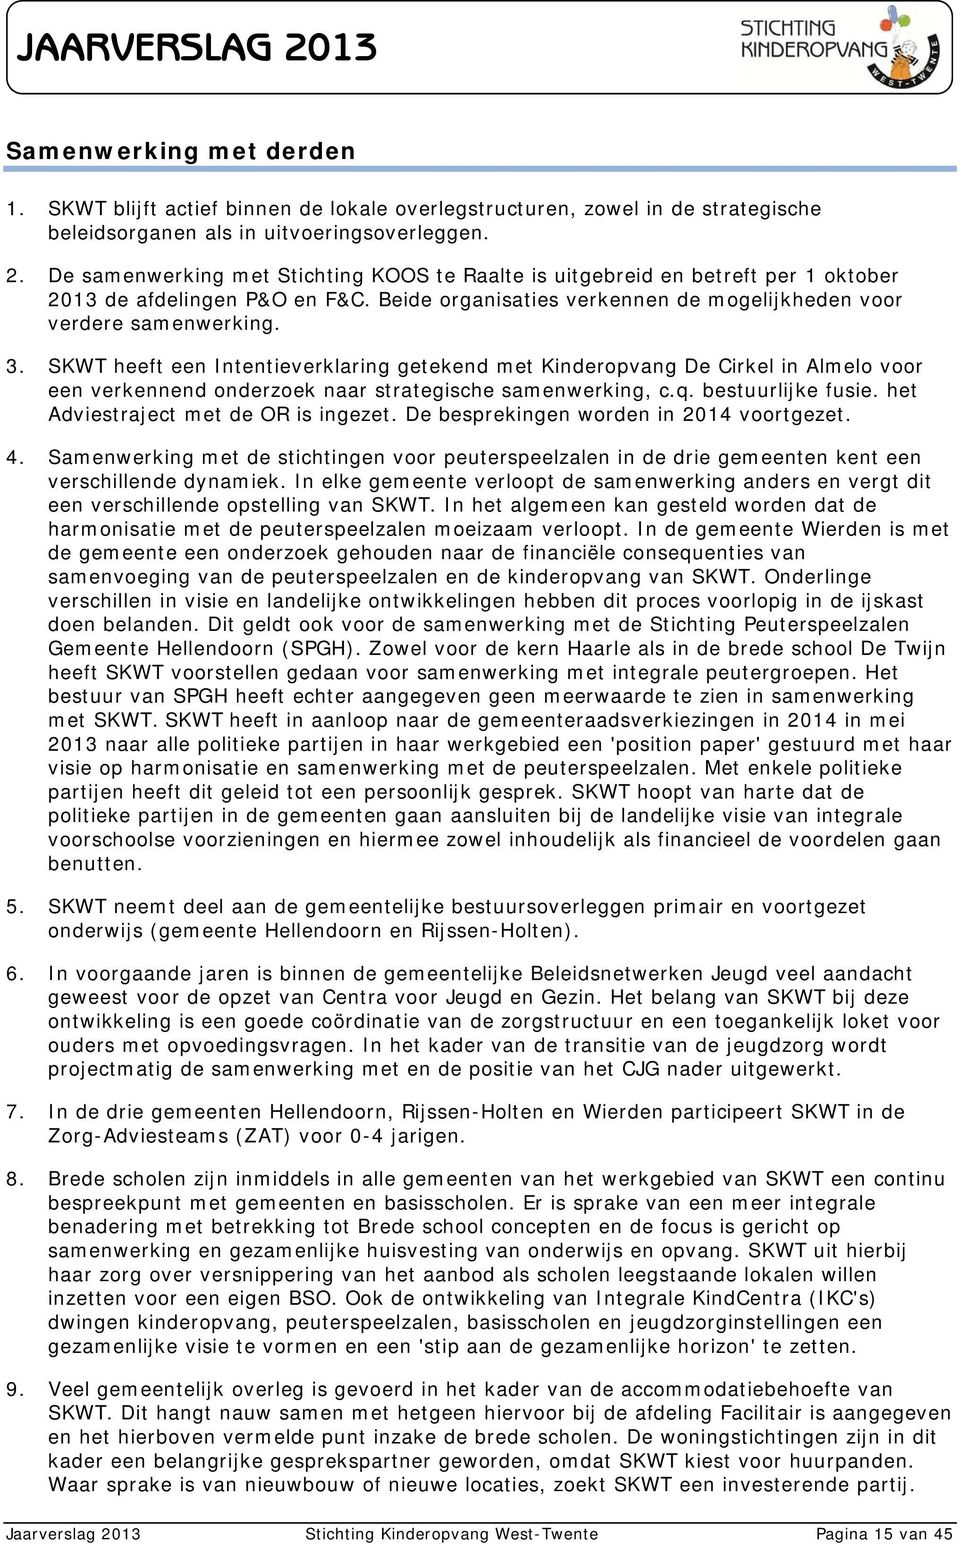 SKWT heeft een Intentieverklaring getekend met Kinderopvang De Cirkel in Almelo voor een verkennend onderzoek naar strategische samenwerking, c.q. bestuurlijke fusie.